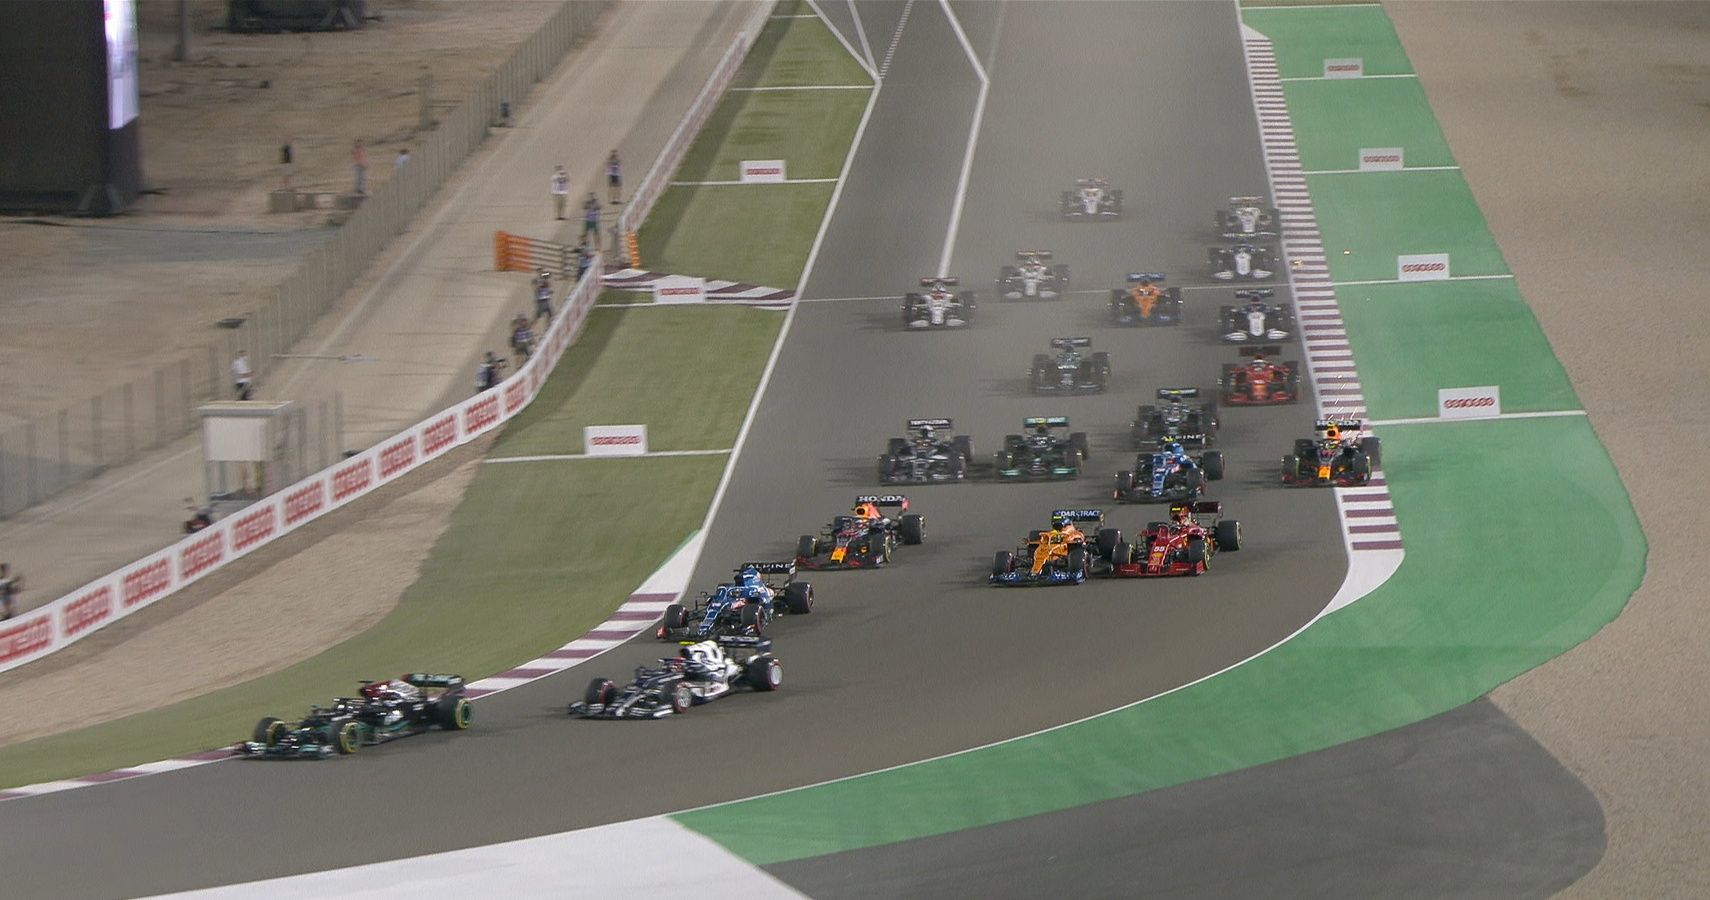 Qatar Grand Prix start